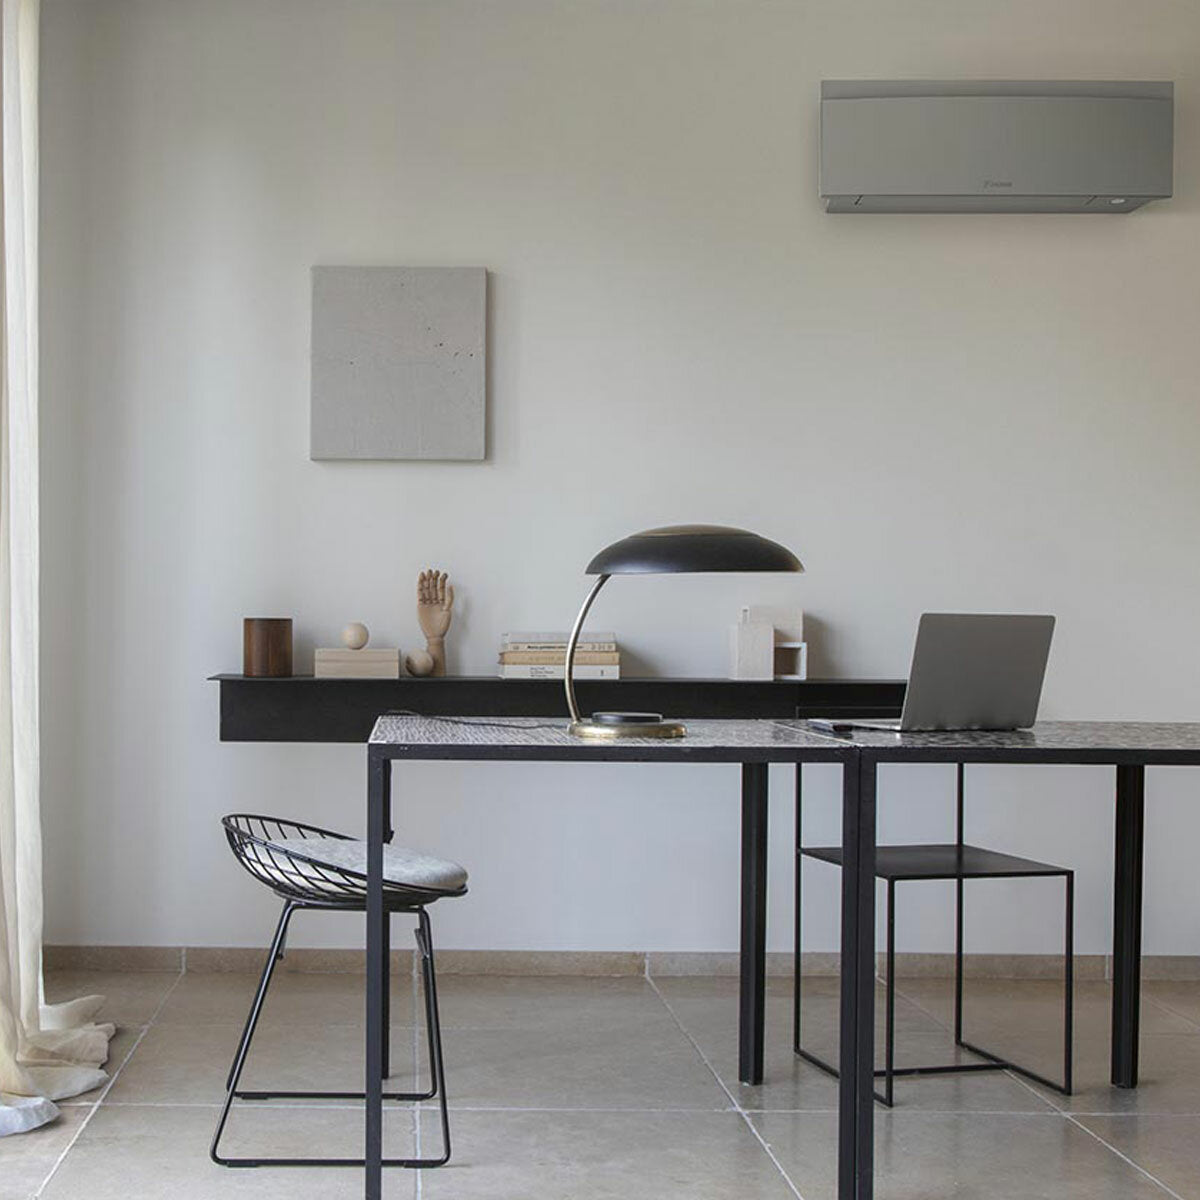 Daikin Emura air conditioner 3 split panels 9000+12000+12000+18000 BTU inverter A++ wifi outdoor unit 7.4 kW Silver